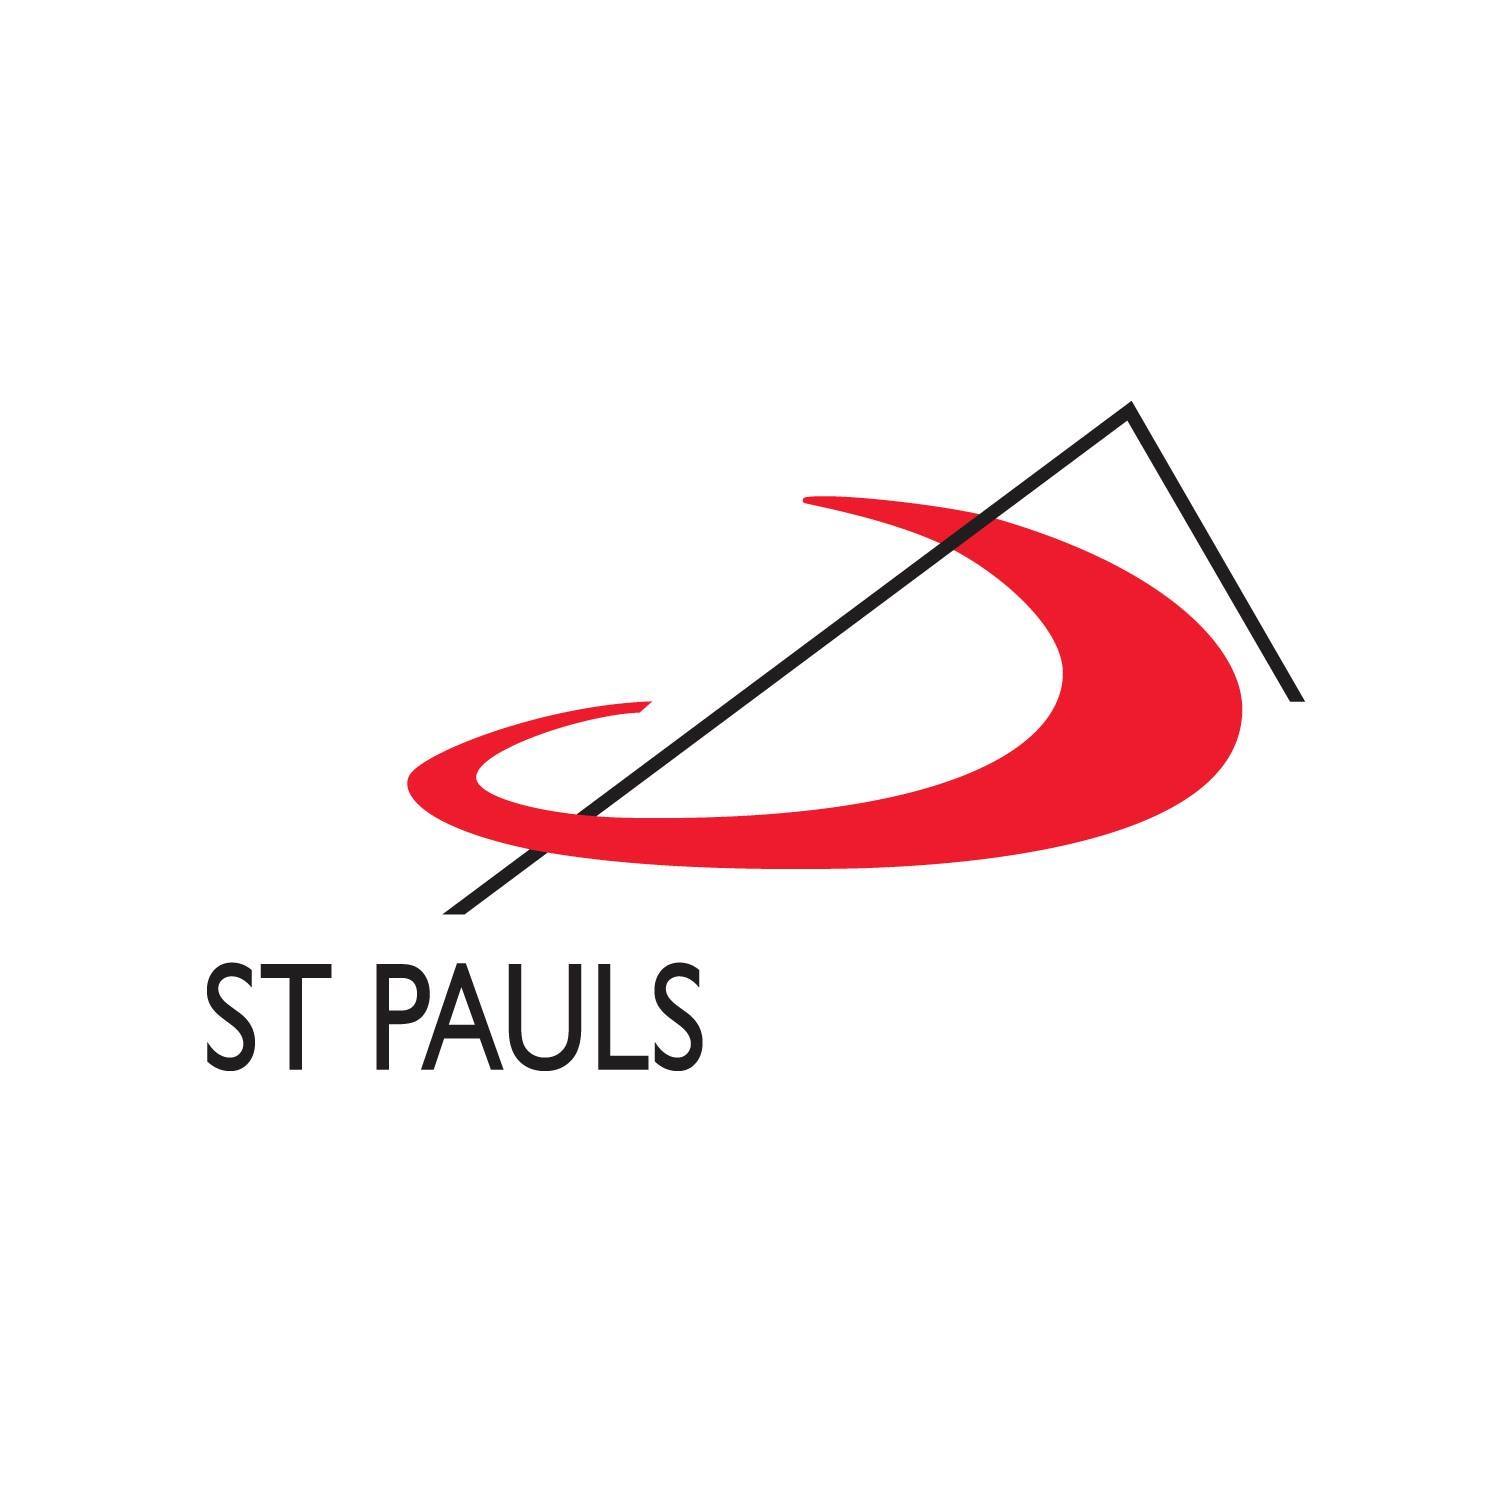 St. Pauls